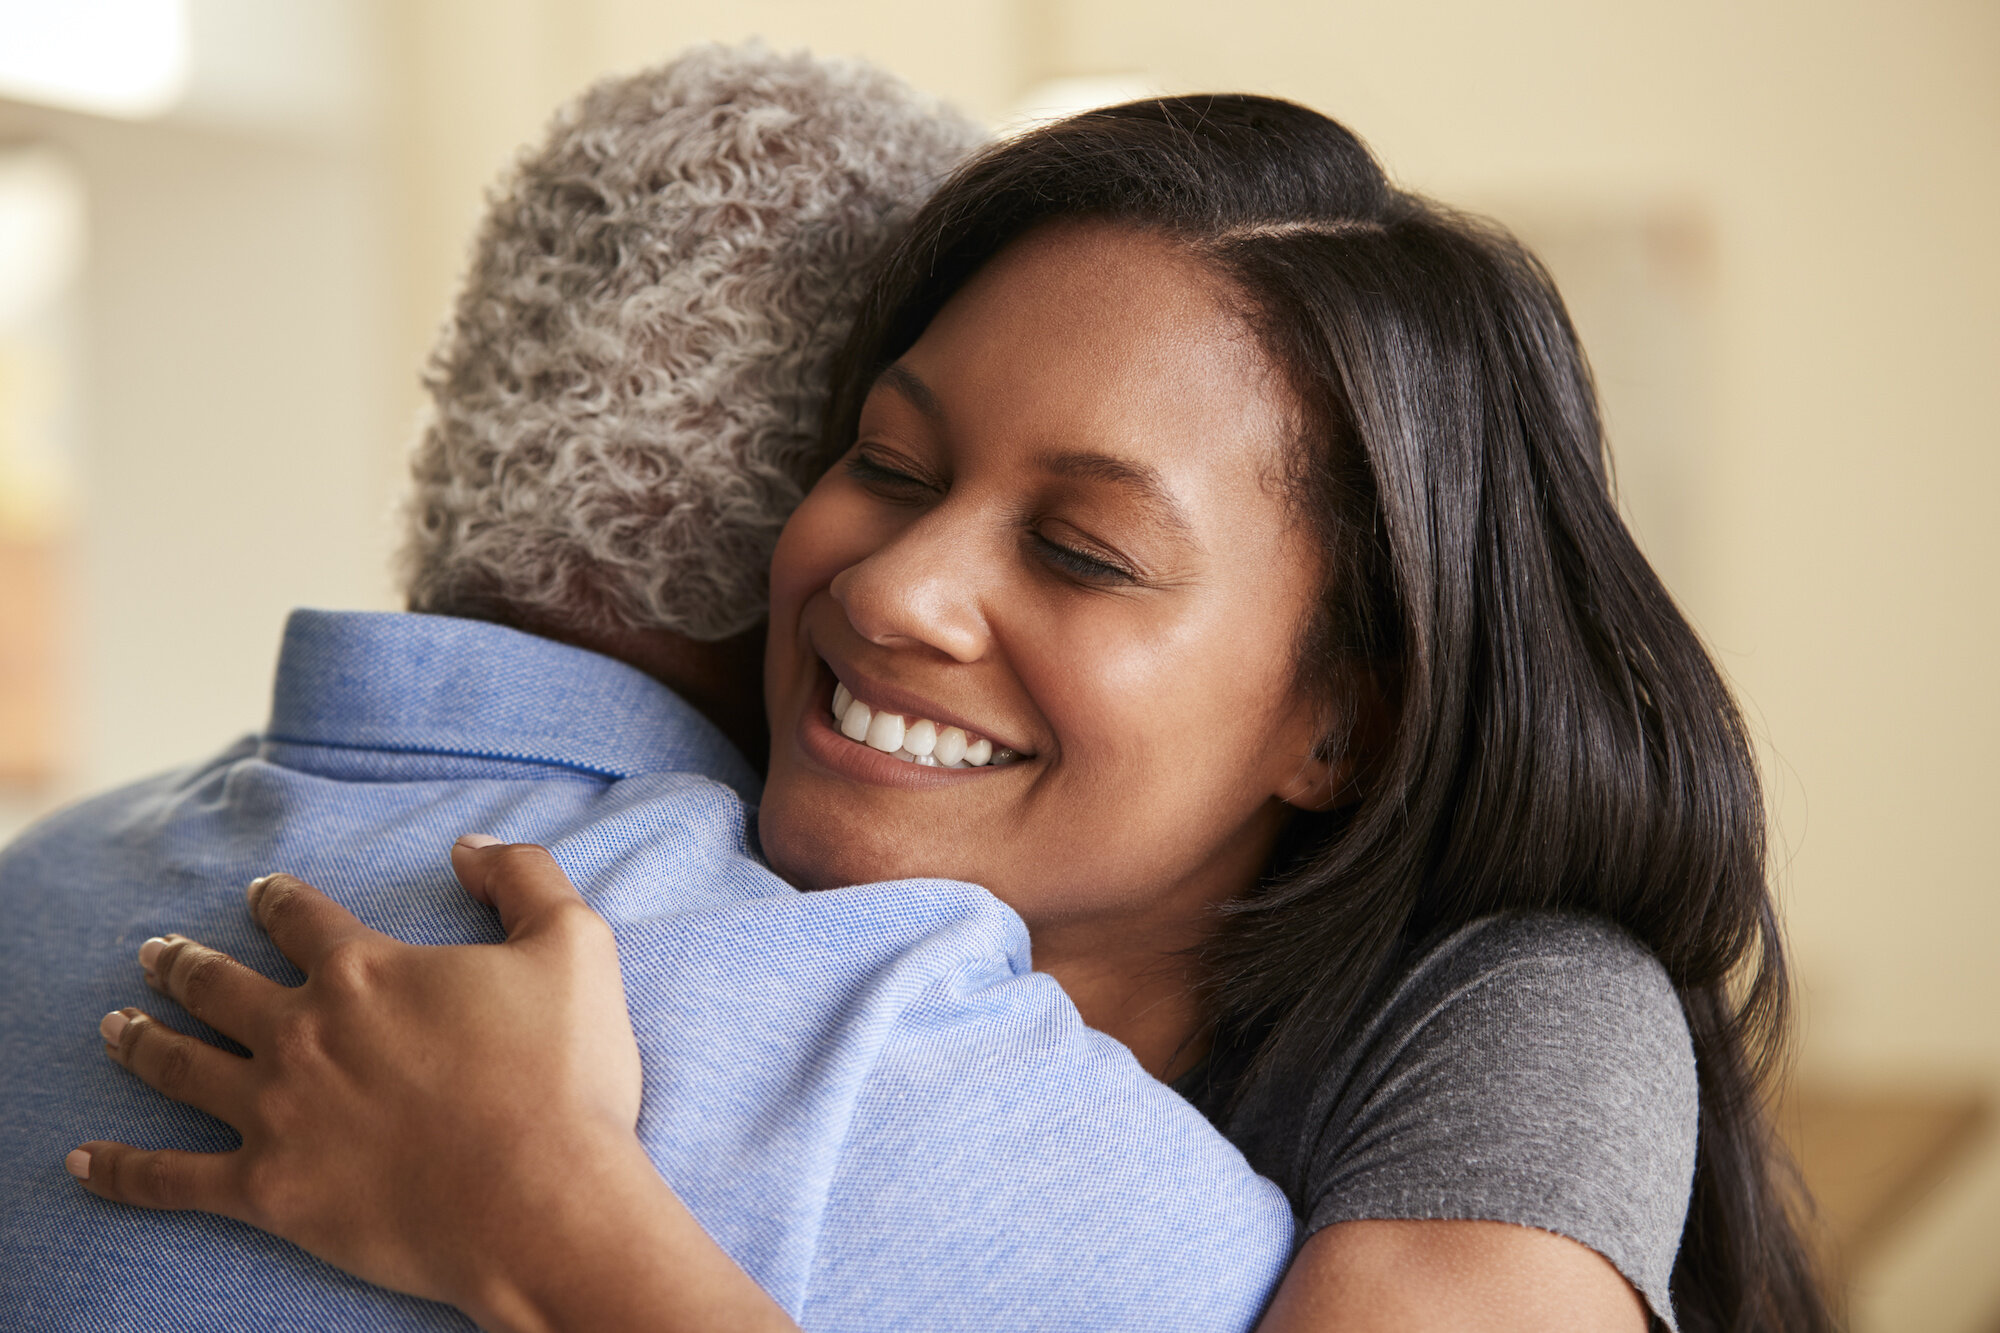 A caregiver joyfully embracing her older loved one